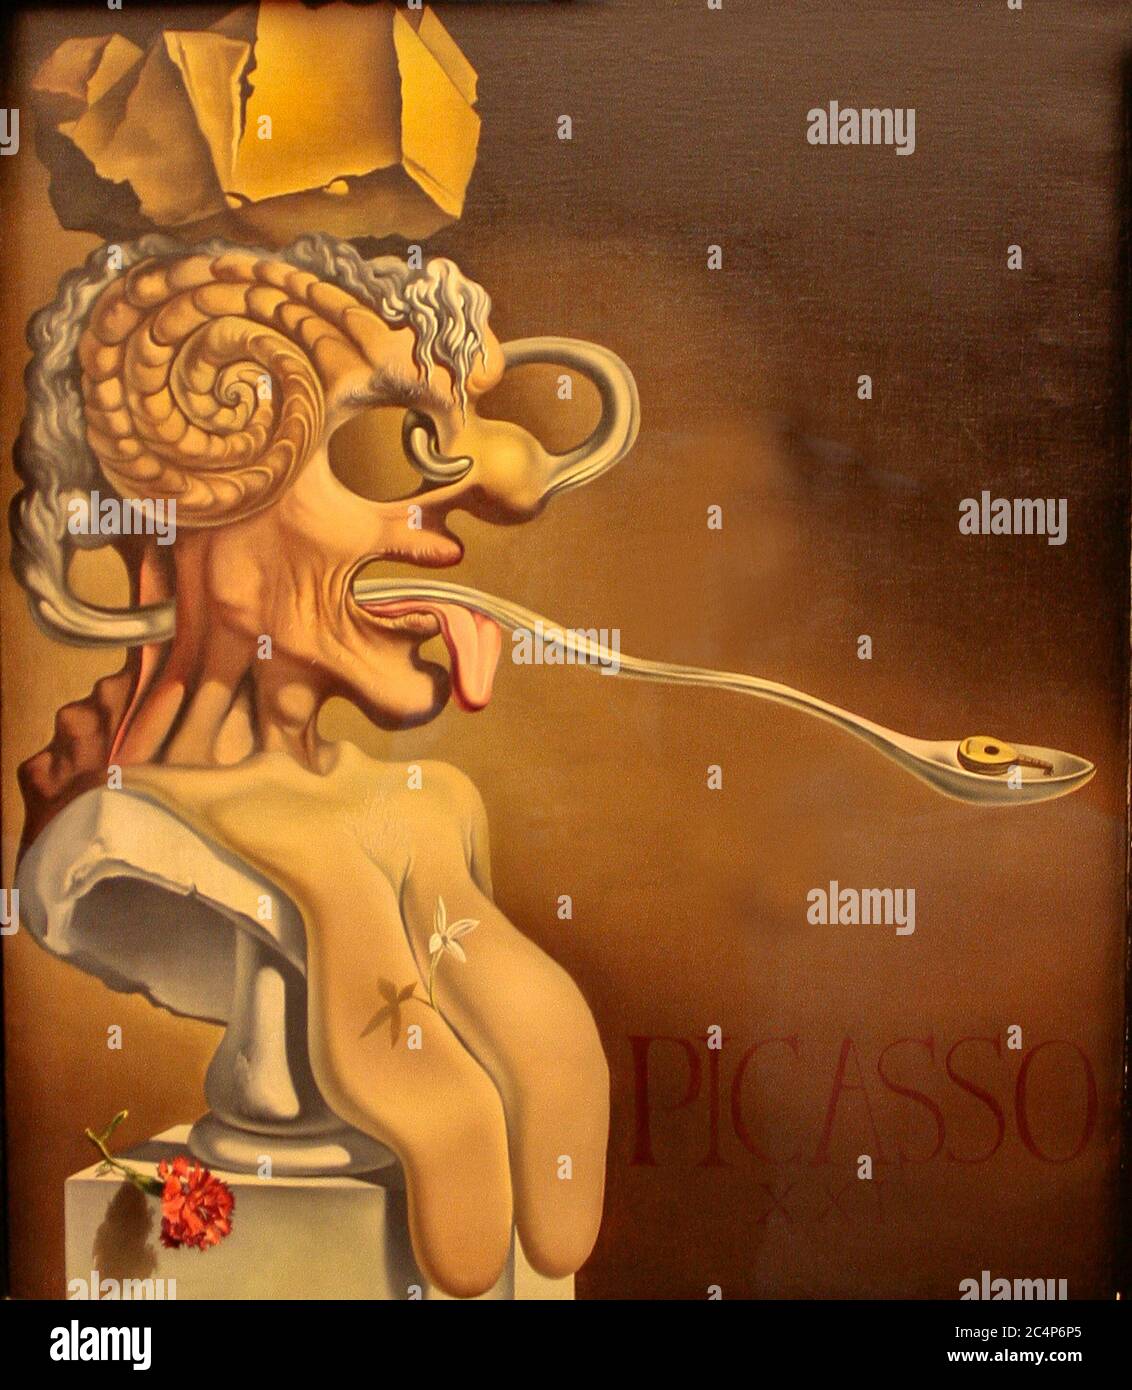 Figueres, l'Alt Empordà, province de Gérone, Catalogne, Espagne. Le Théâtre-musée Salvador Dalí (Teatre Museuu Dalì). Portrait de Pablo Picasso au XXIe siècle, 1947. Dimensions : 65,5 x 56 cm. Huile sur toile. Banque D'Images